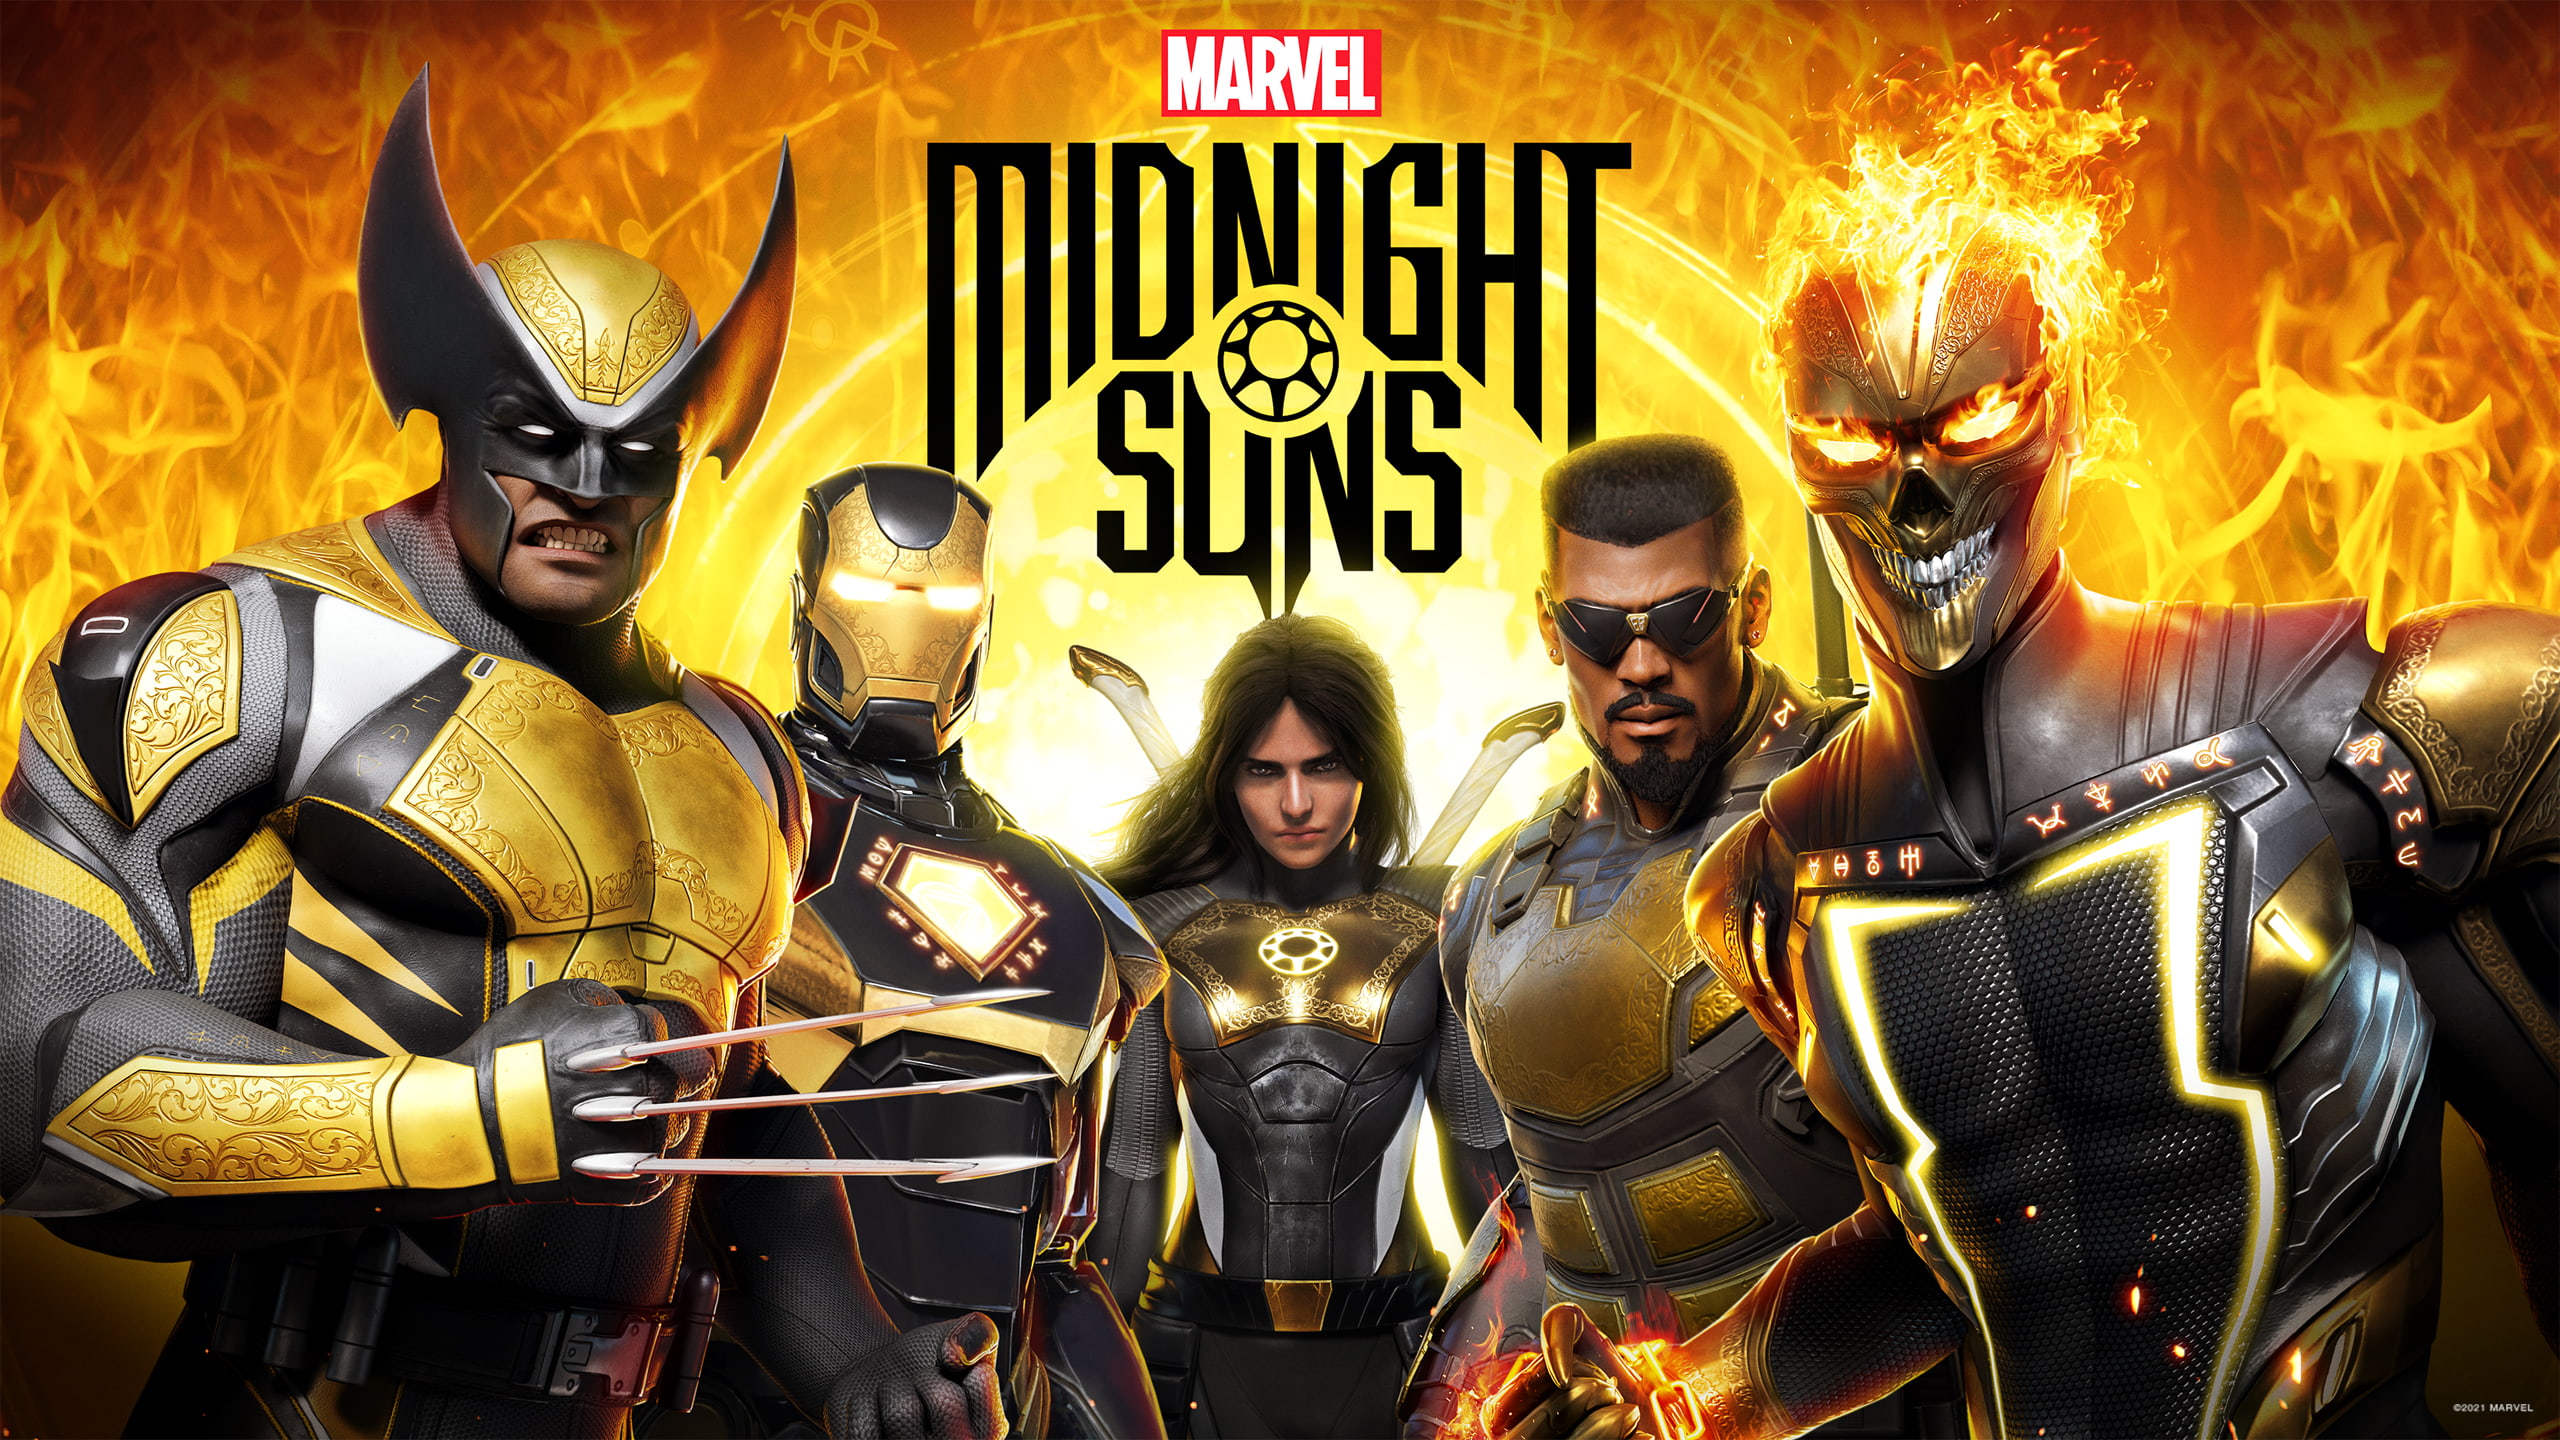 Marvels Midnight Suns neuer Charakter-Trailer wurde veröffentlicht!